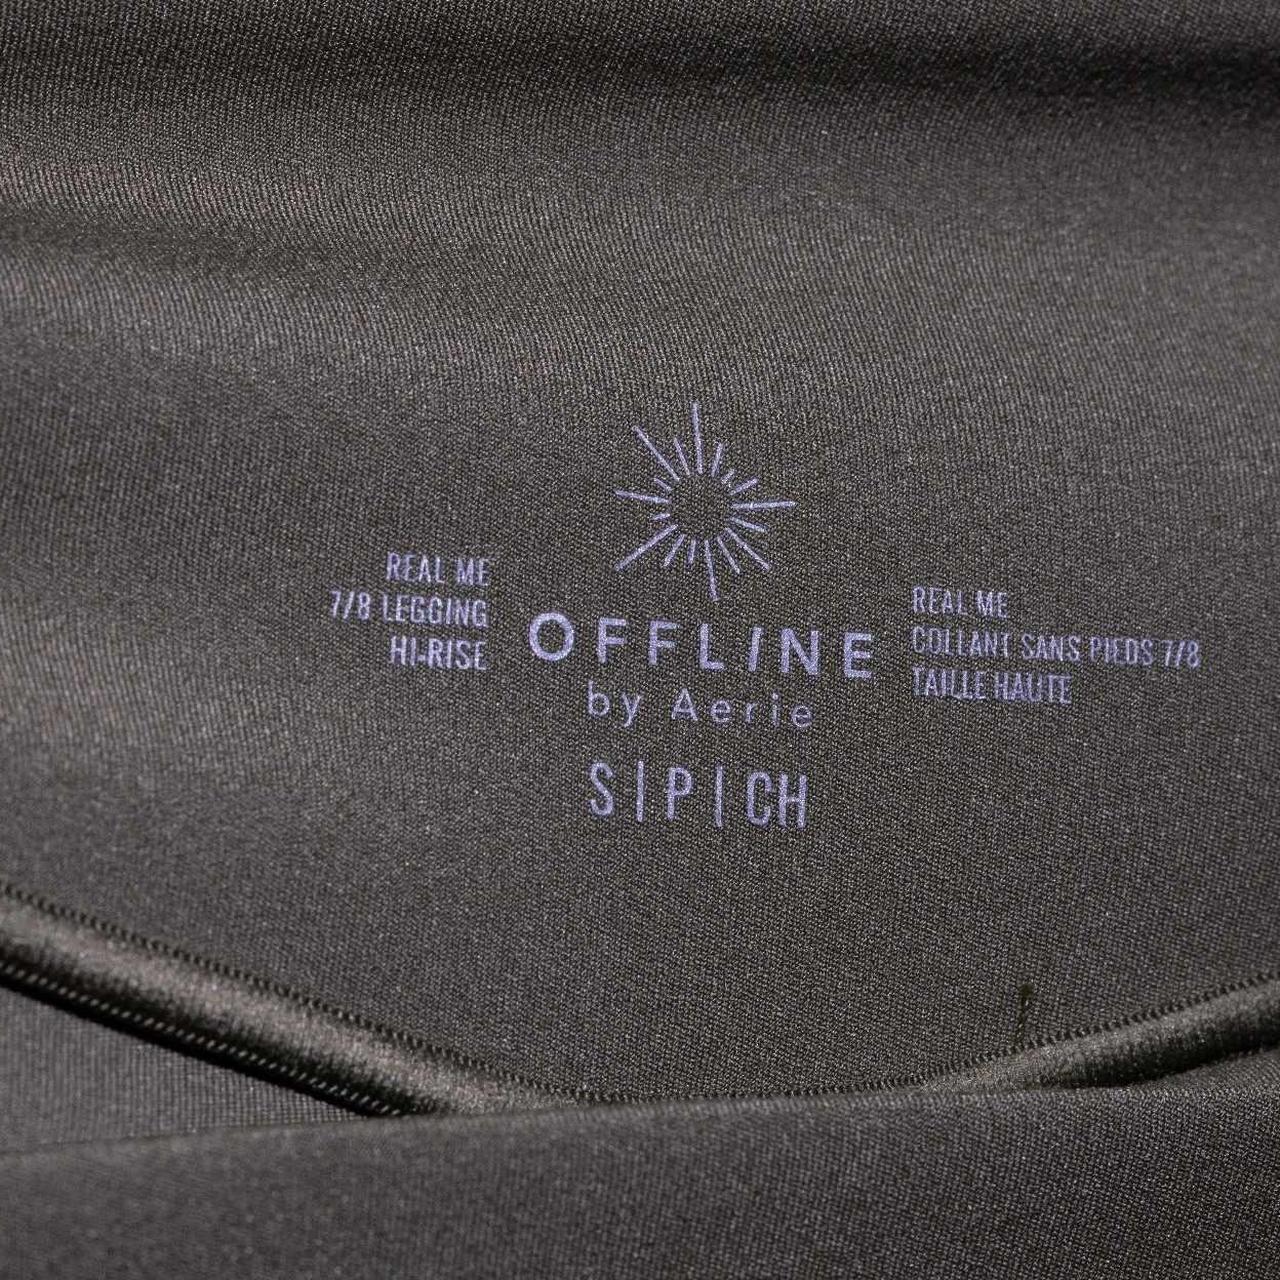 offline by aerie 7/8 length olive green legging - Depop